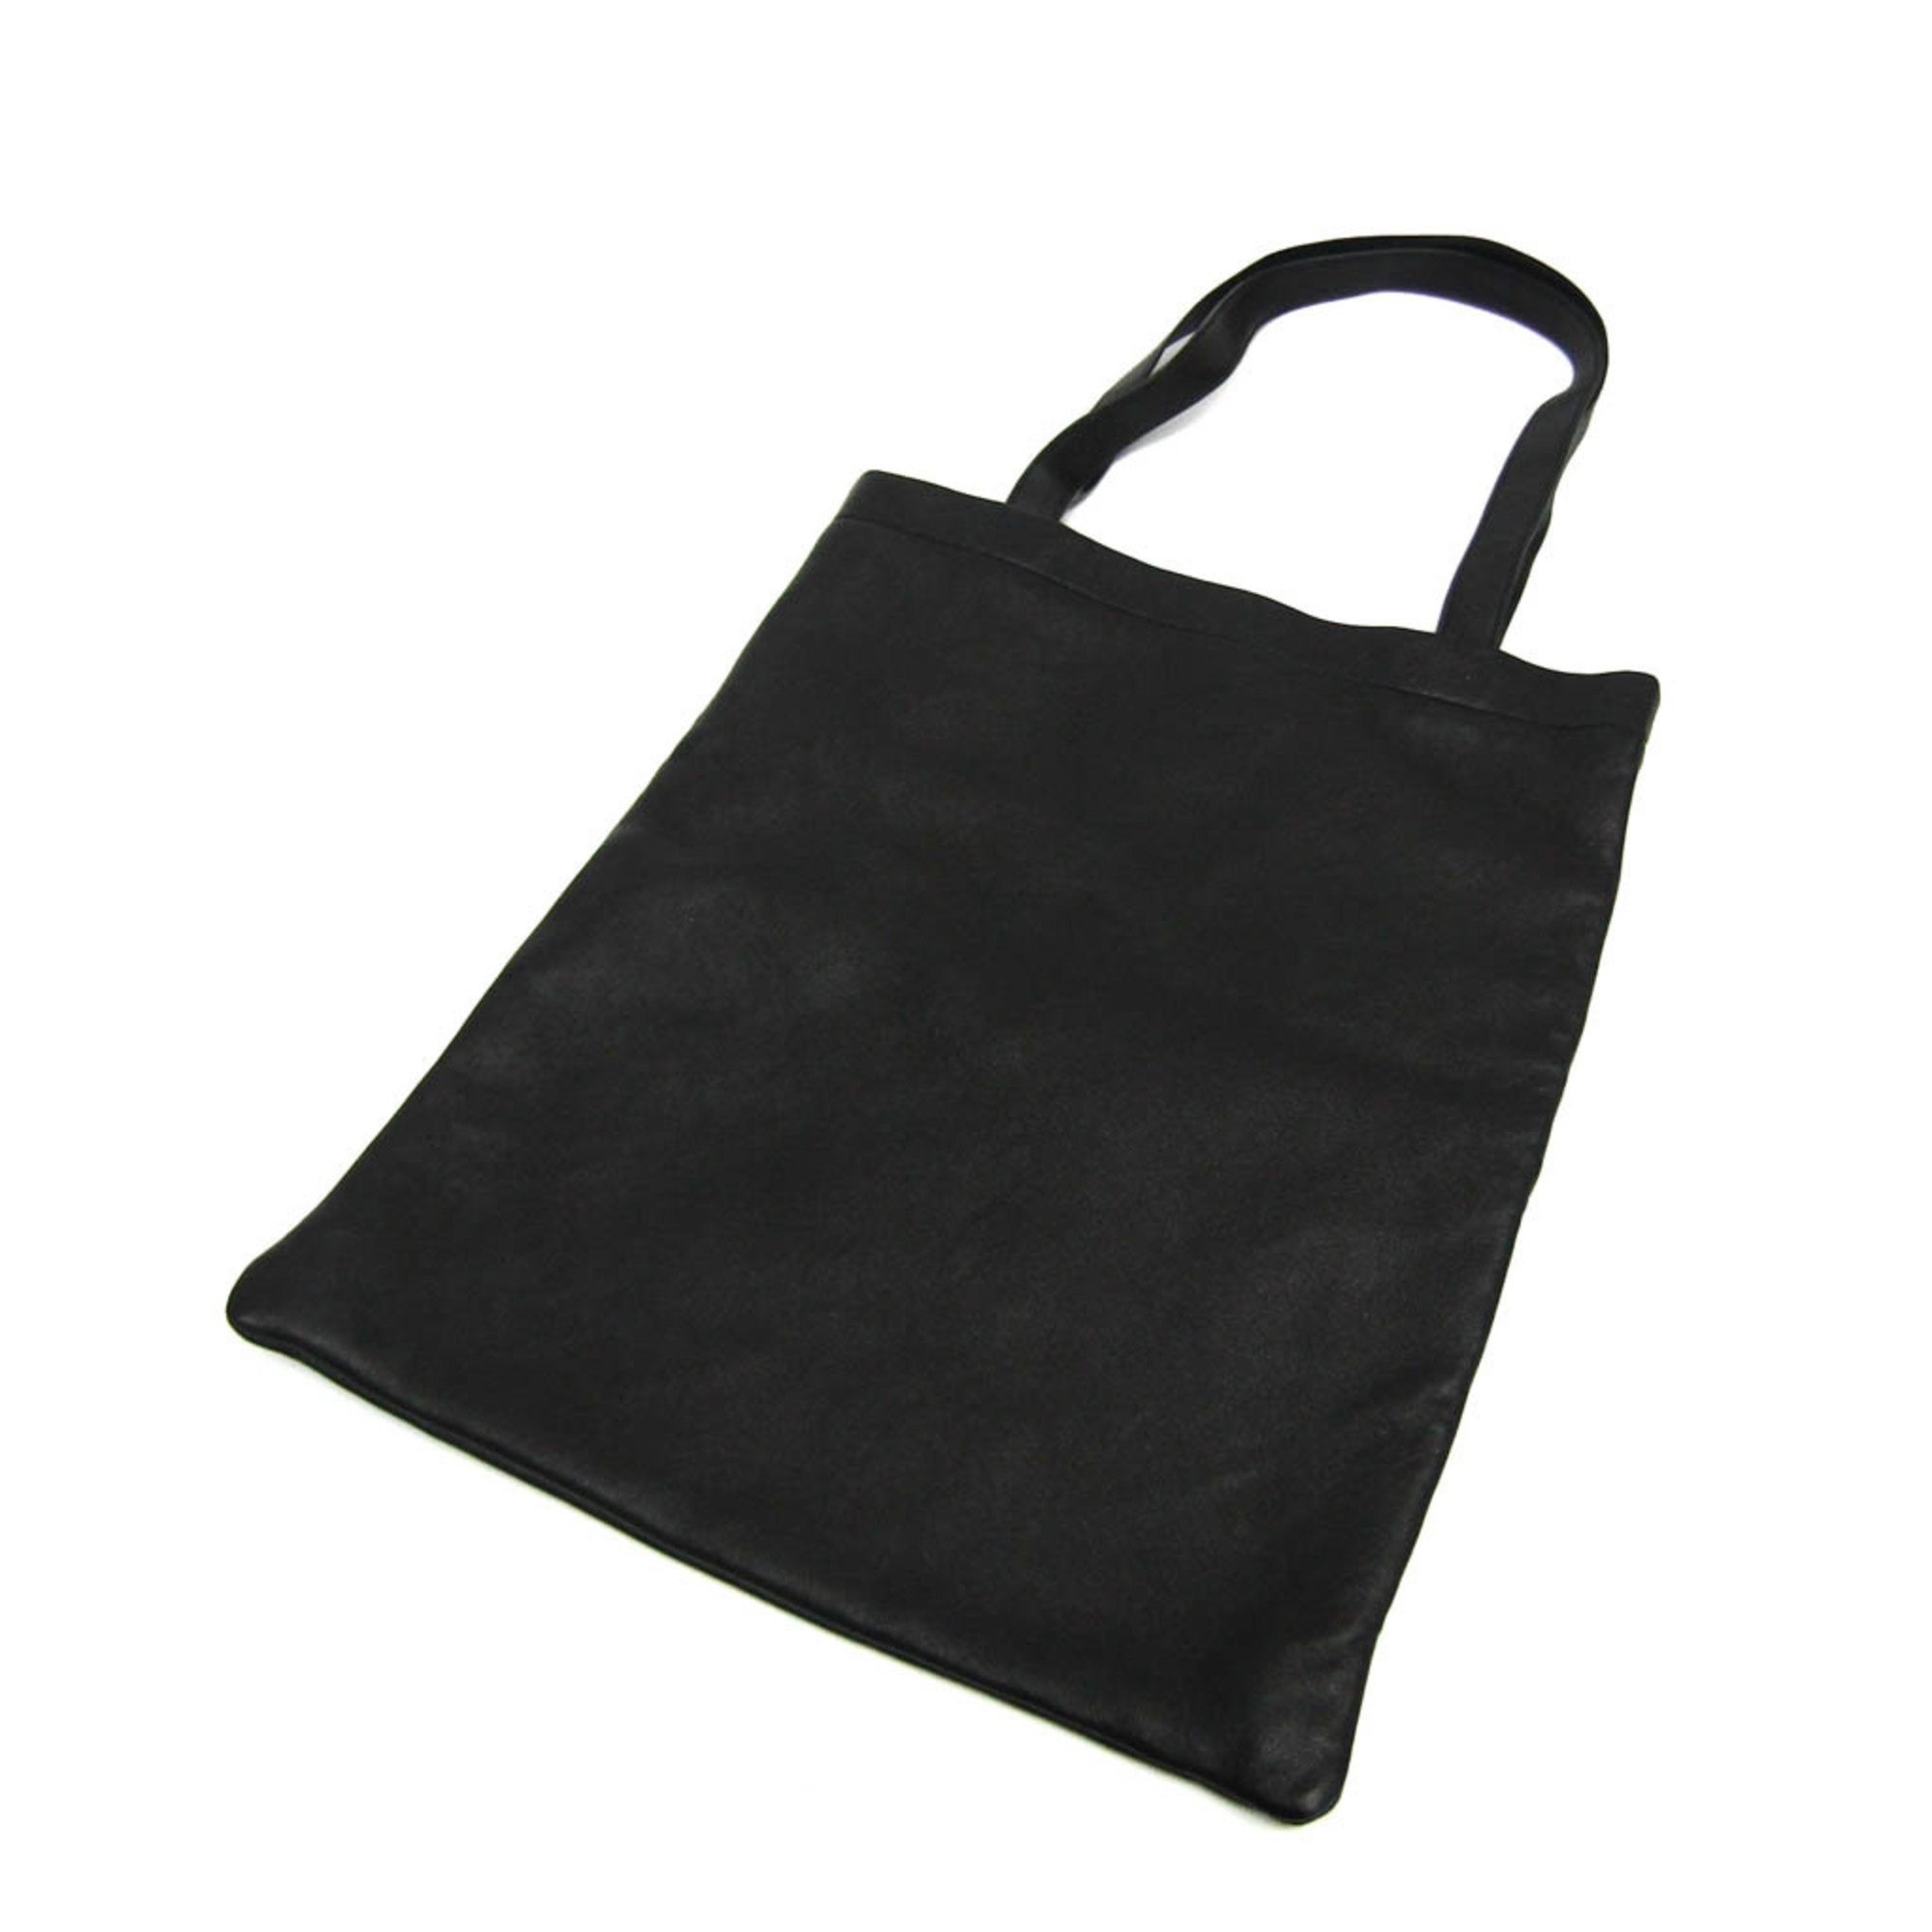 Saint Laurent Women's Leather Tote Bag Black